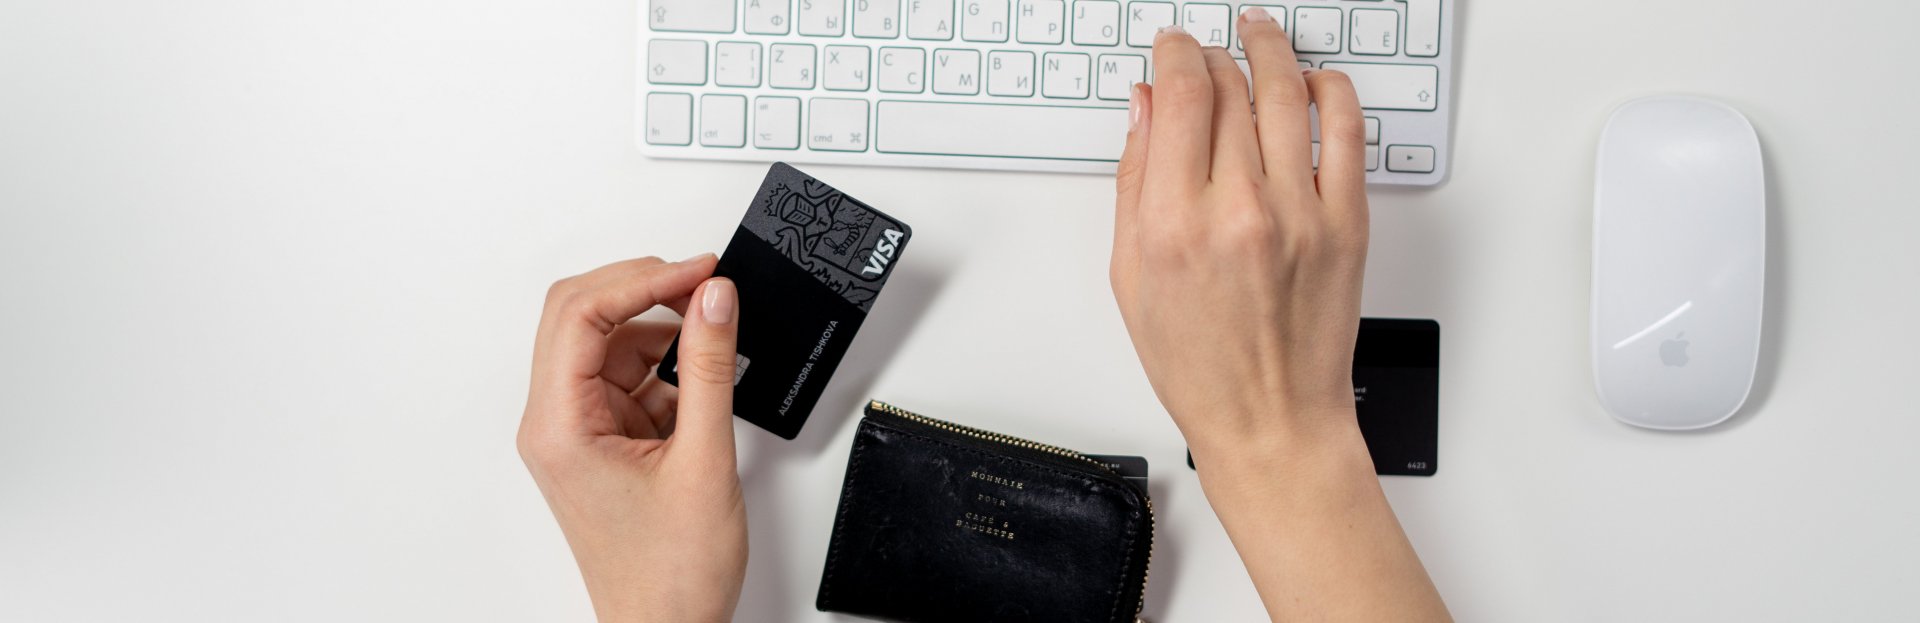 Manos sobre un teclado sosteniendo una tarjeta de crédito